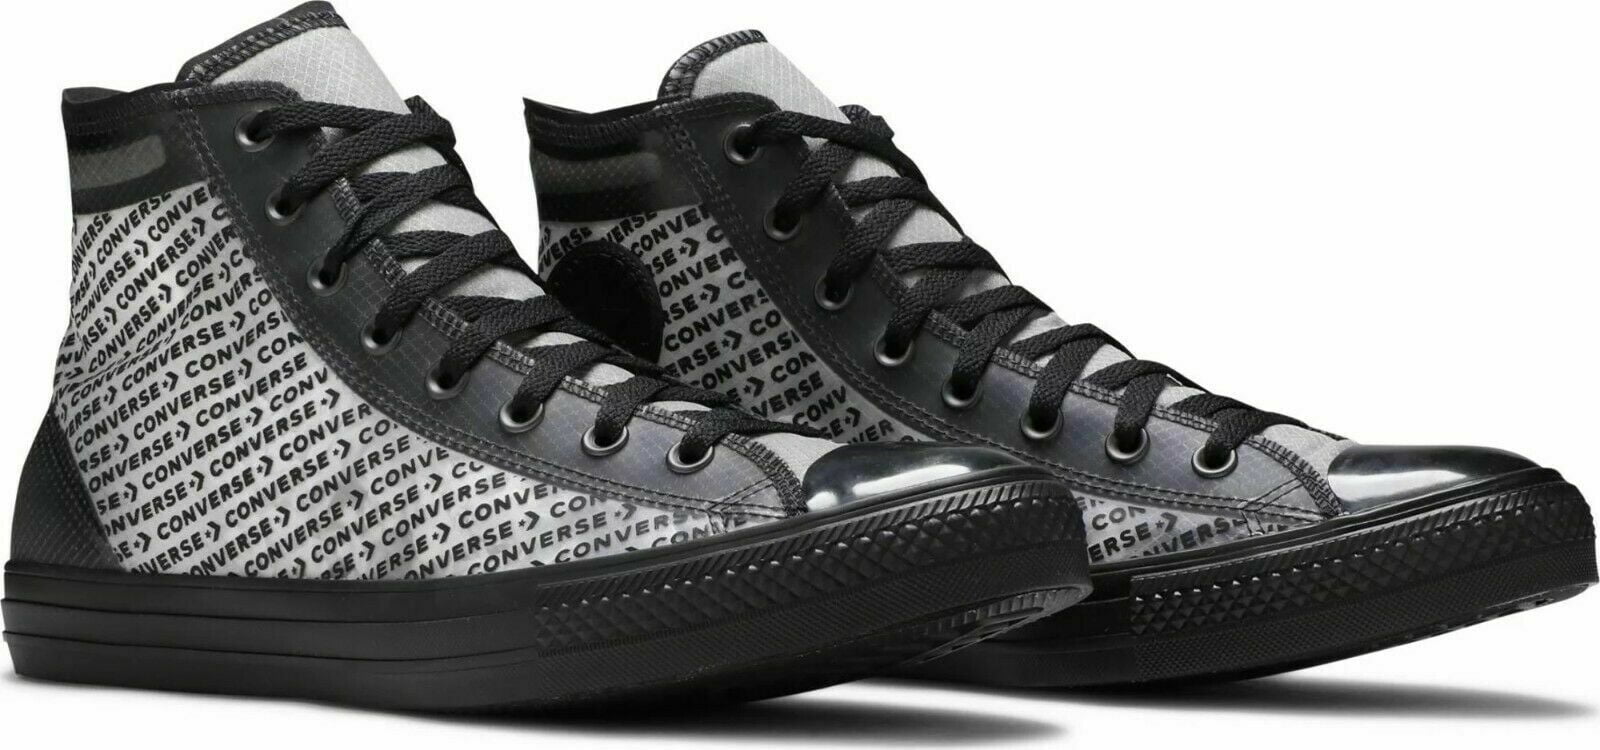 Converse Chuck Taylor All Hi Edition Sneaker Shoe 165668C Walmart.com